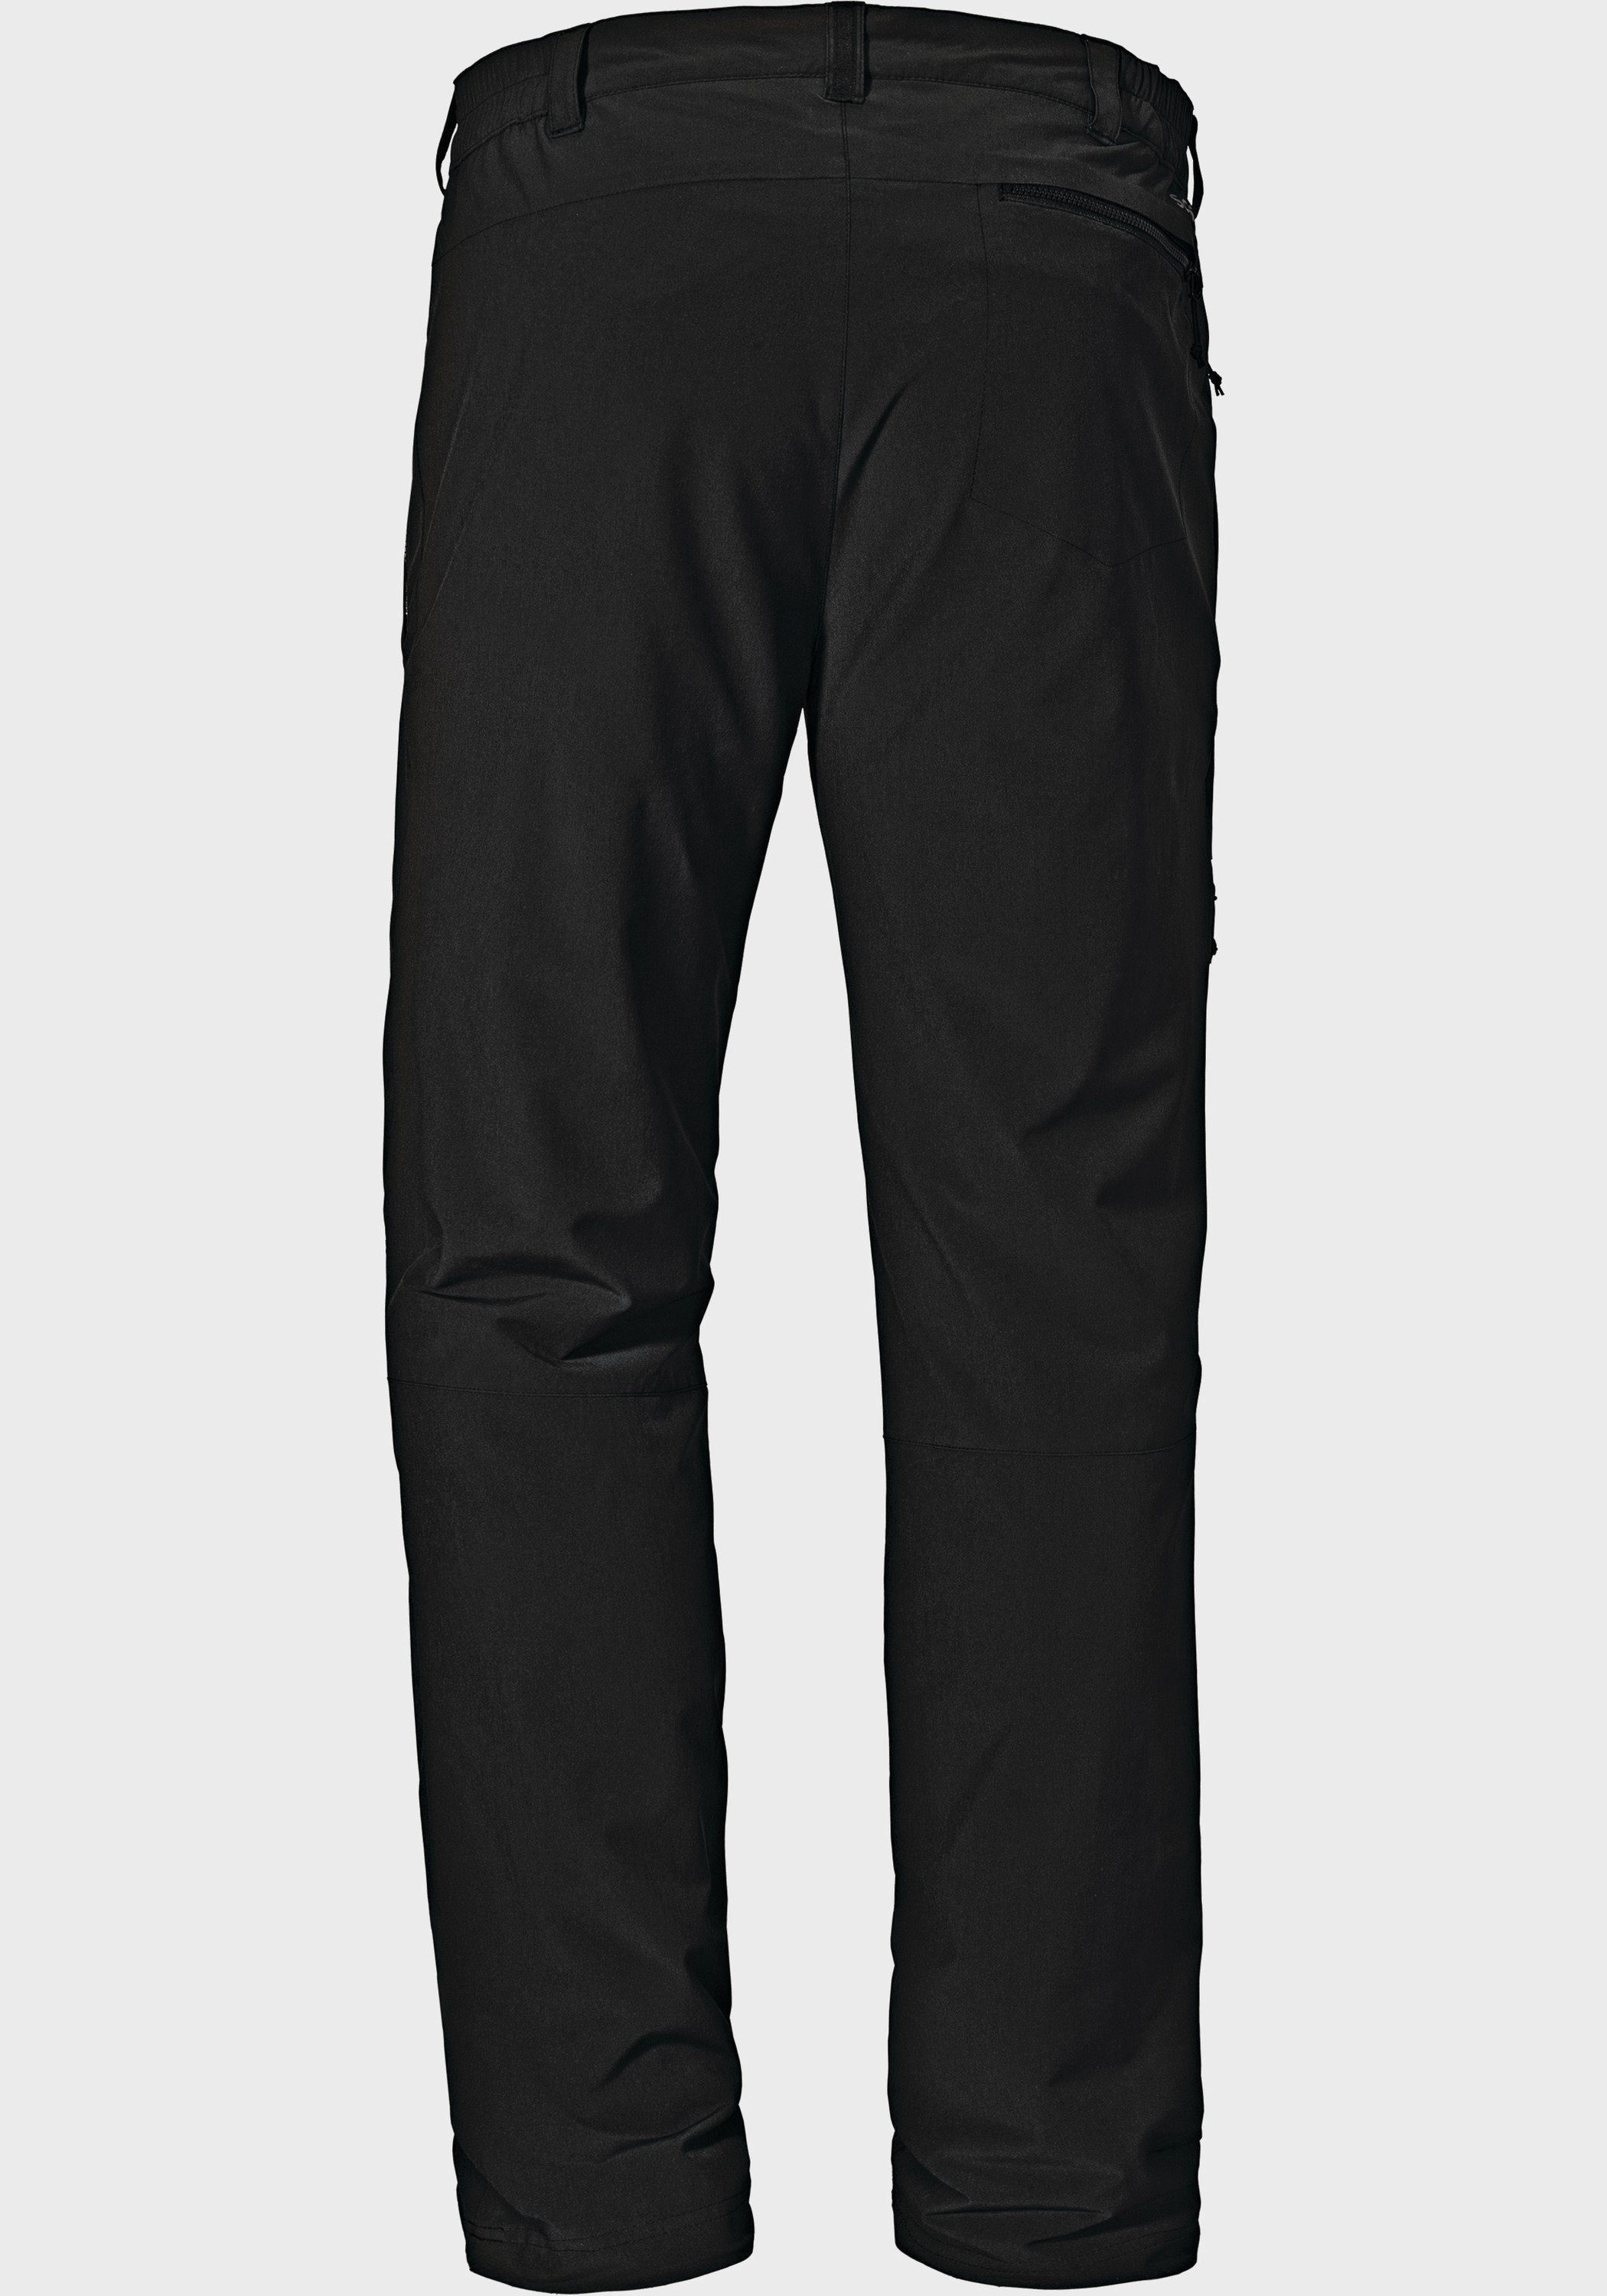 Schöffel Outdoorhose Pants Koper1 Warm schwarz M